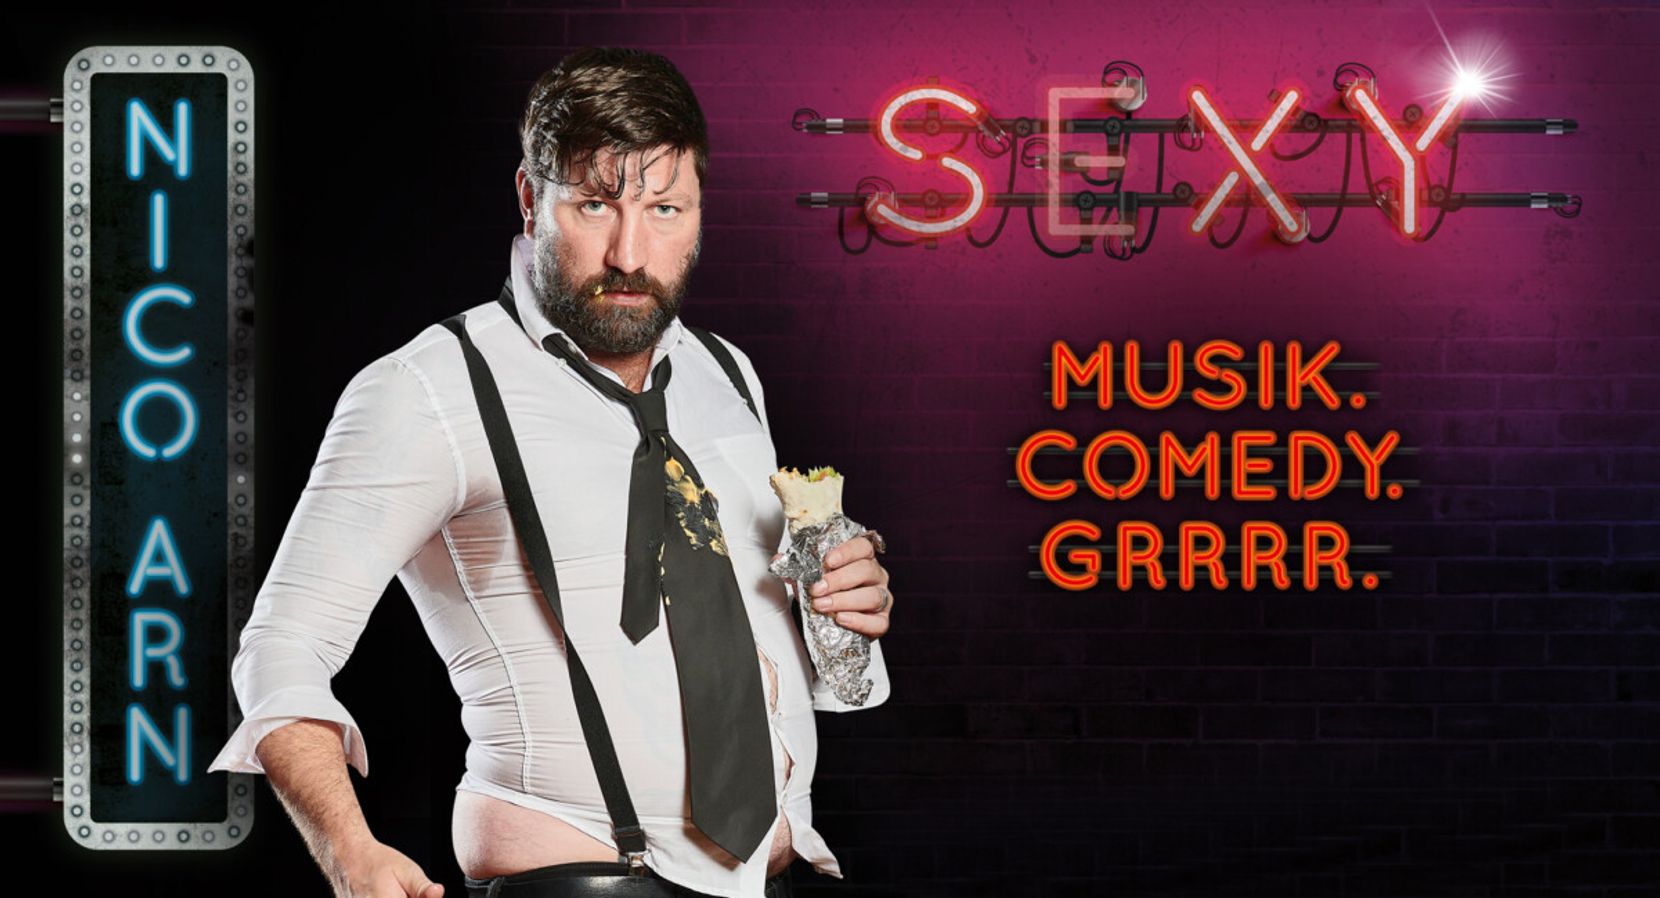 Zu sehen ist Nico Arn auf dem Plakat seines Programmes «Sexy» in welchem er auf witzige Art Comedy und Musik zu einer einzigartigen Show verbindet.